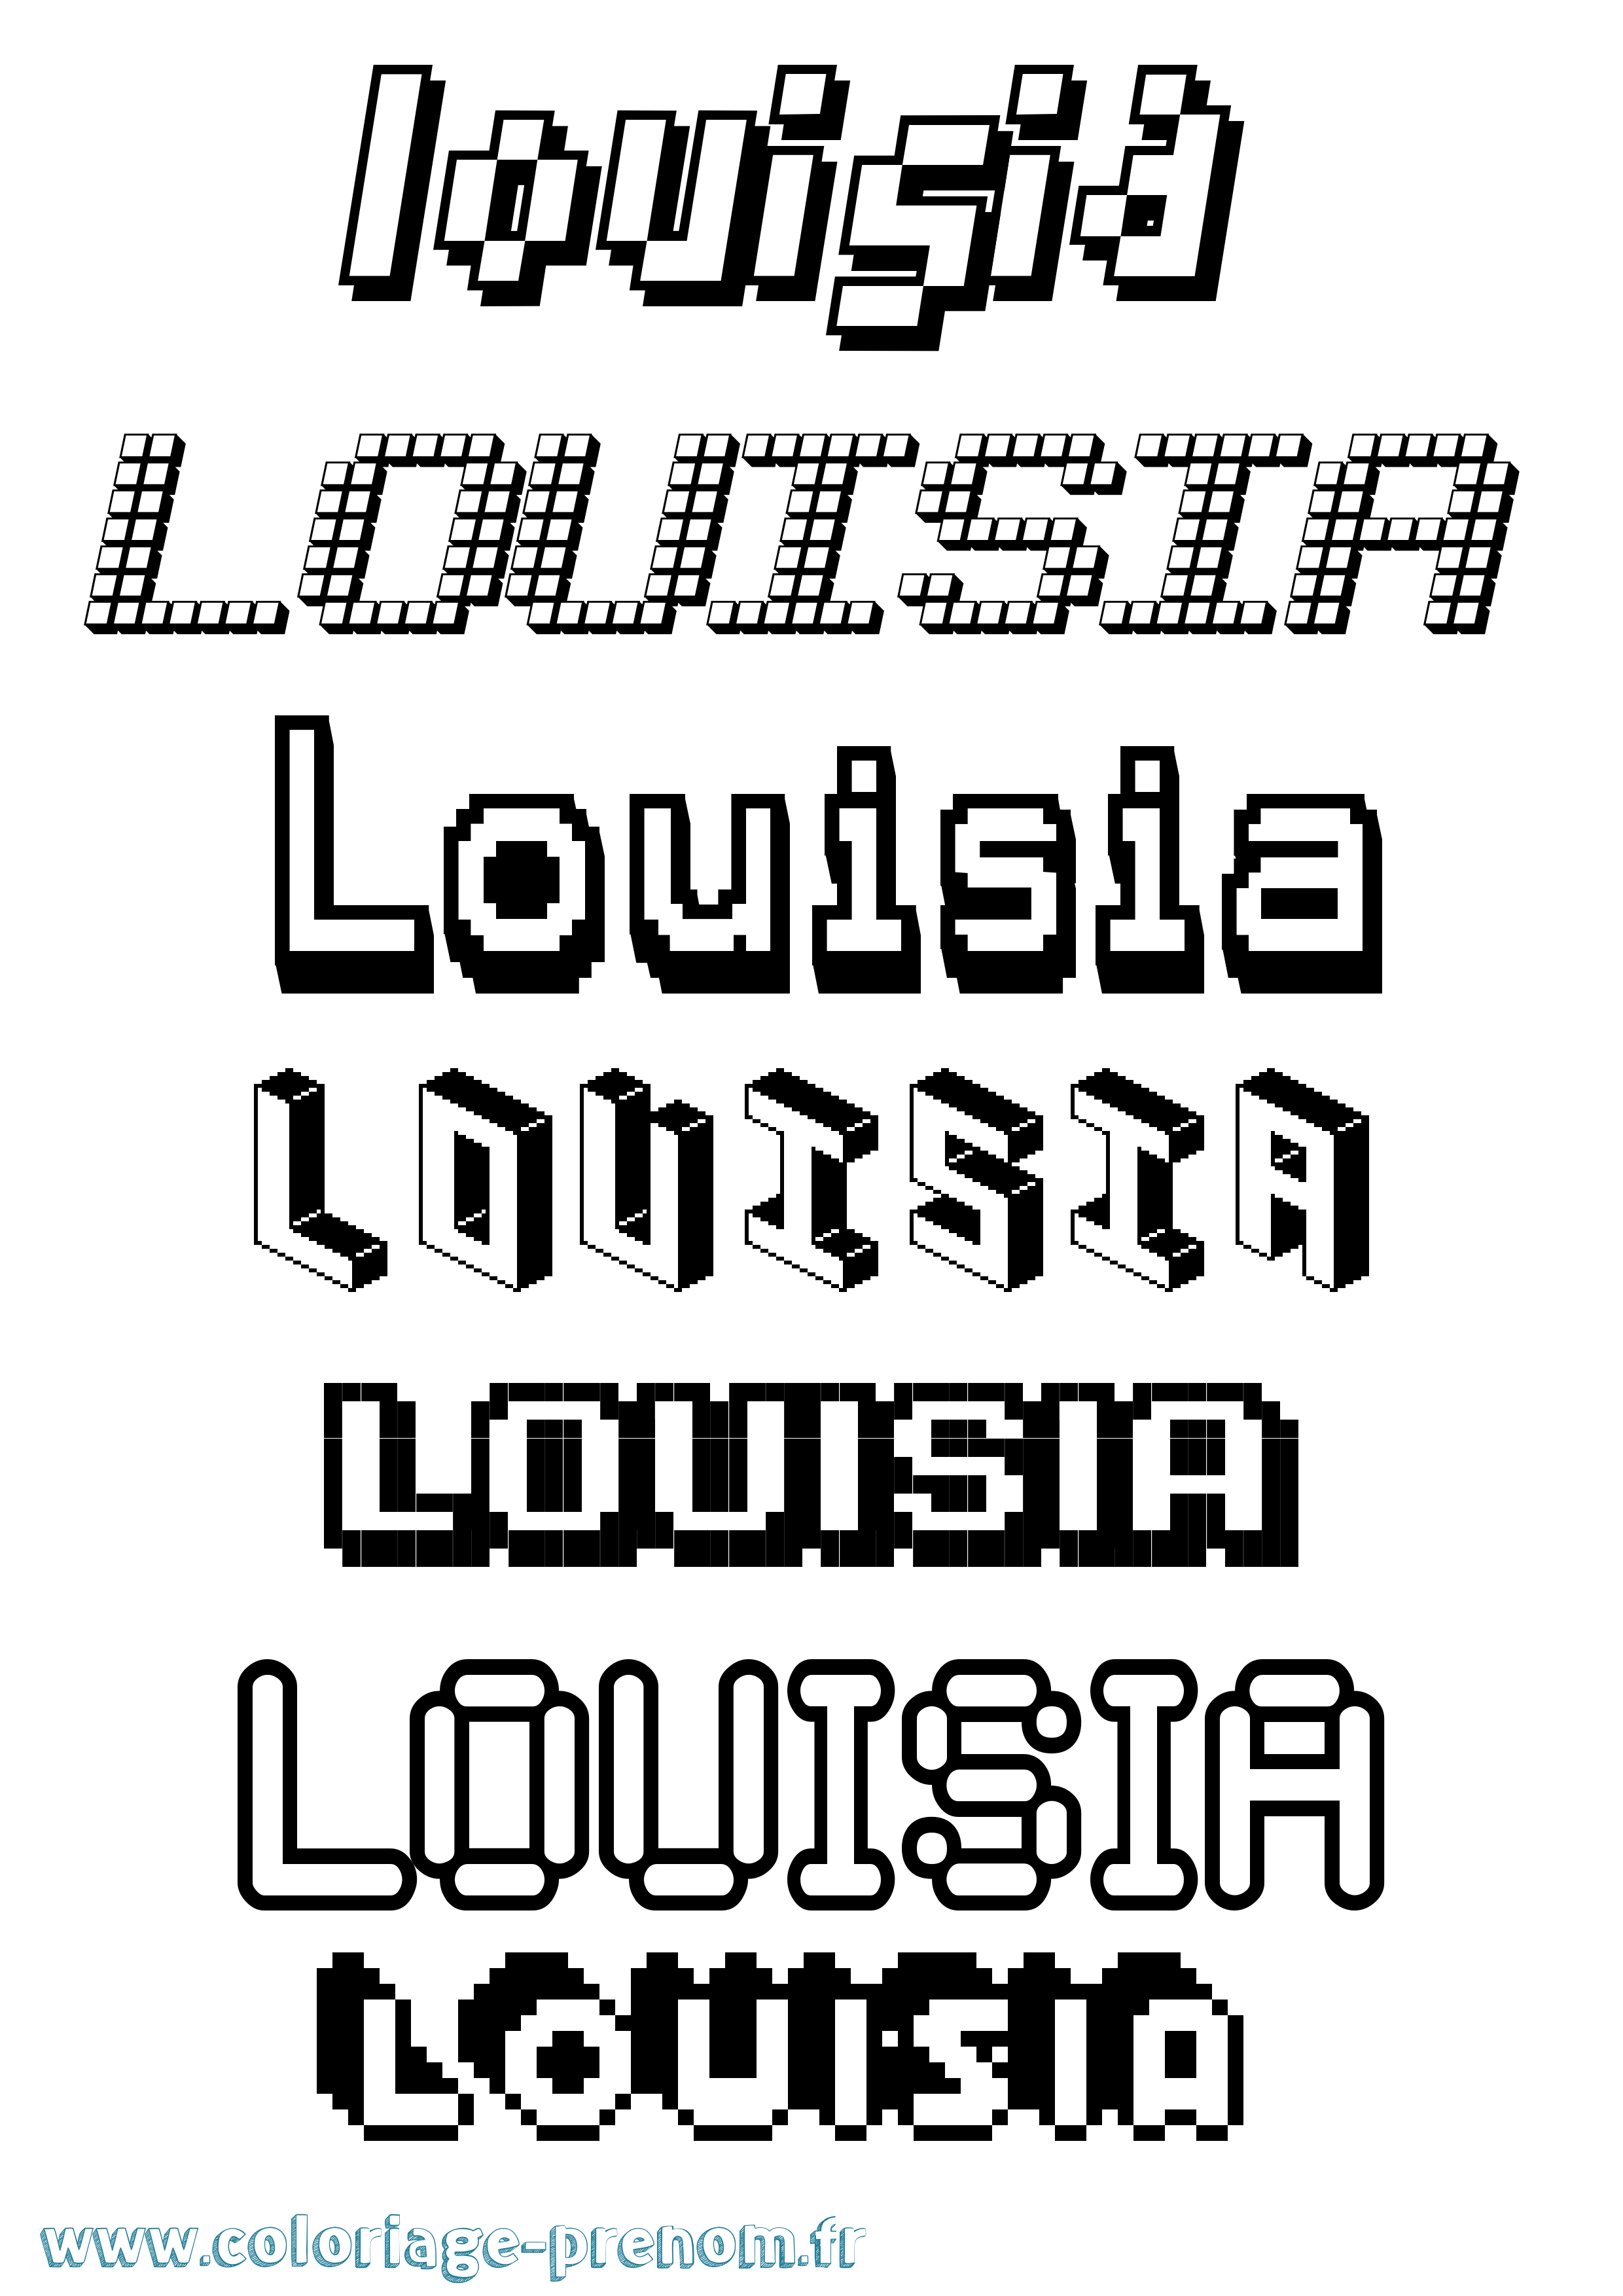 Coloriage prénom Louisia Pixel